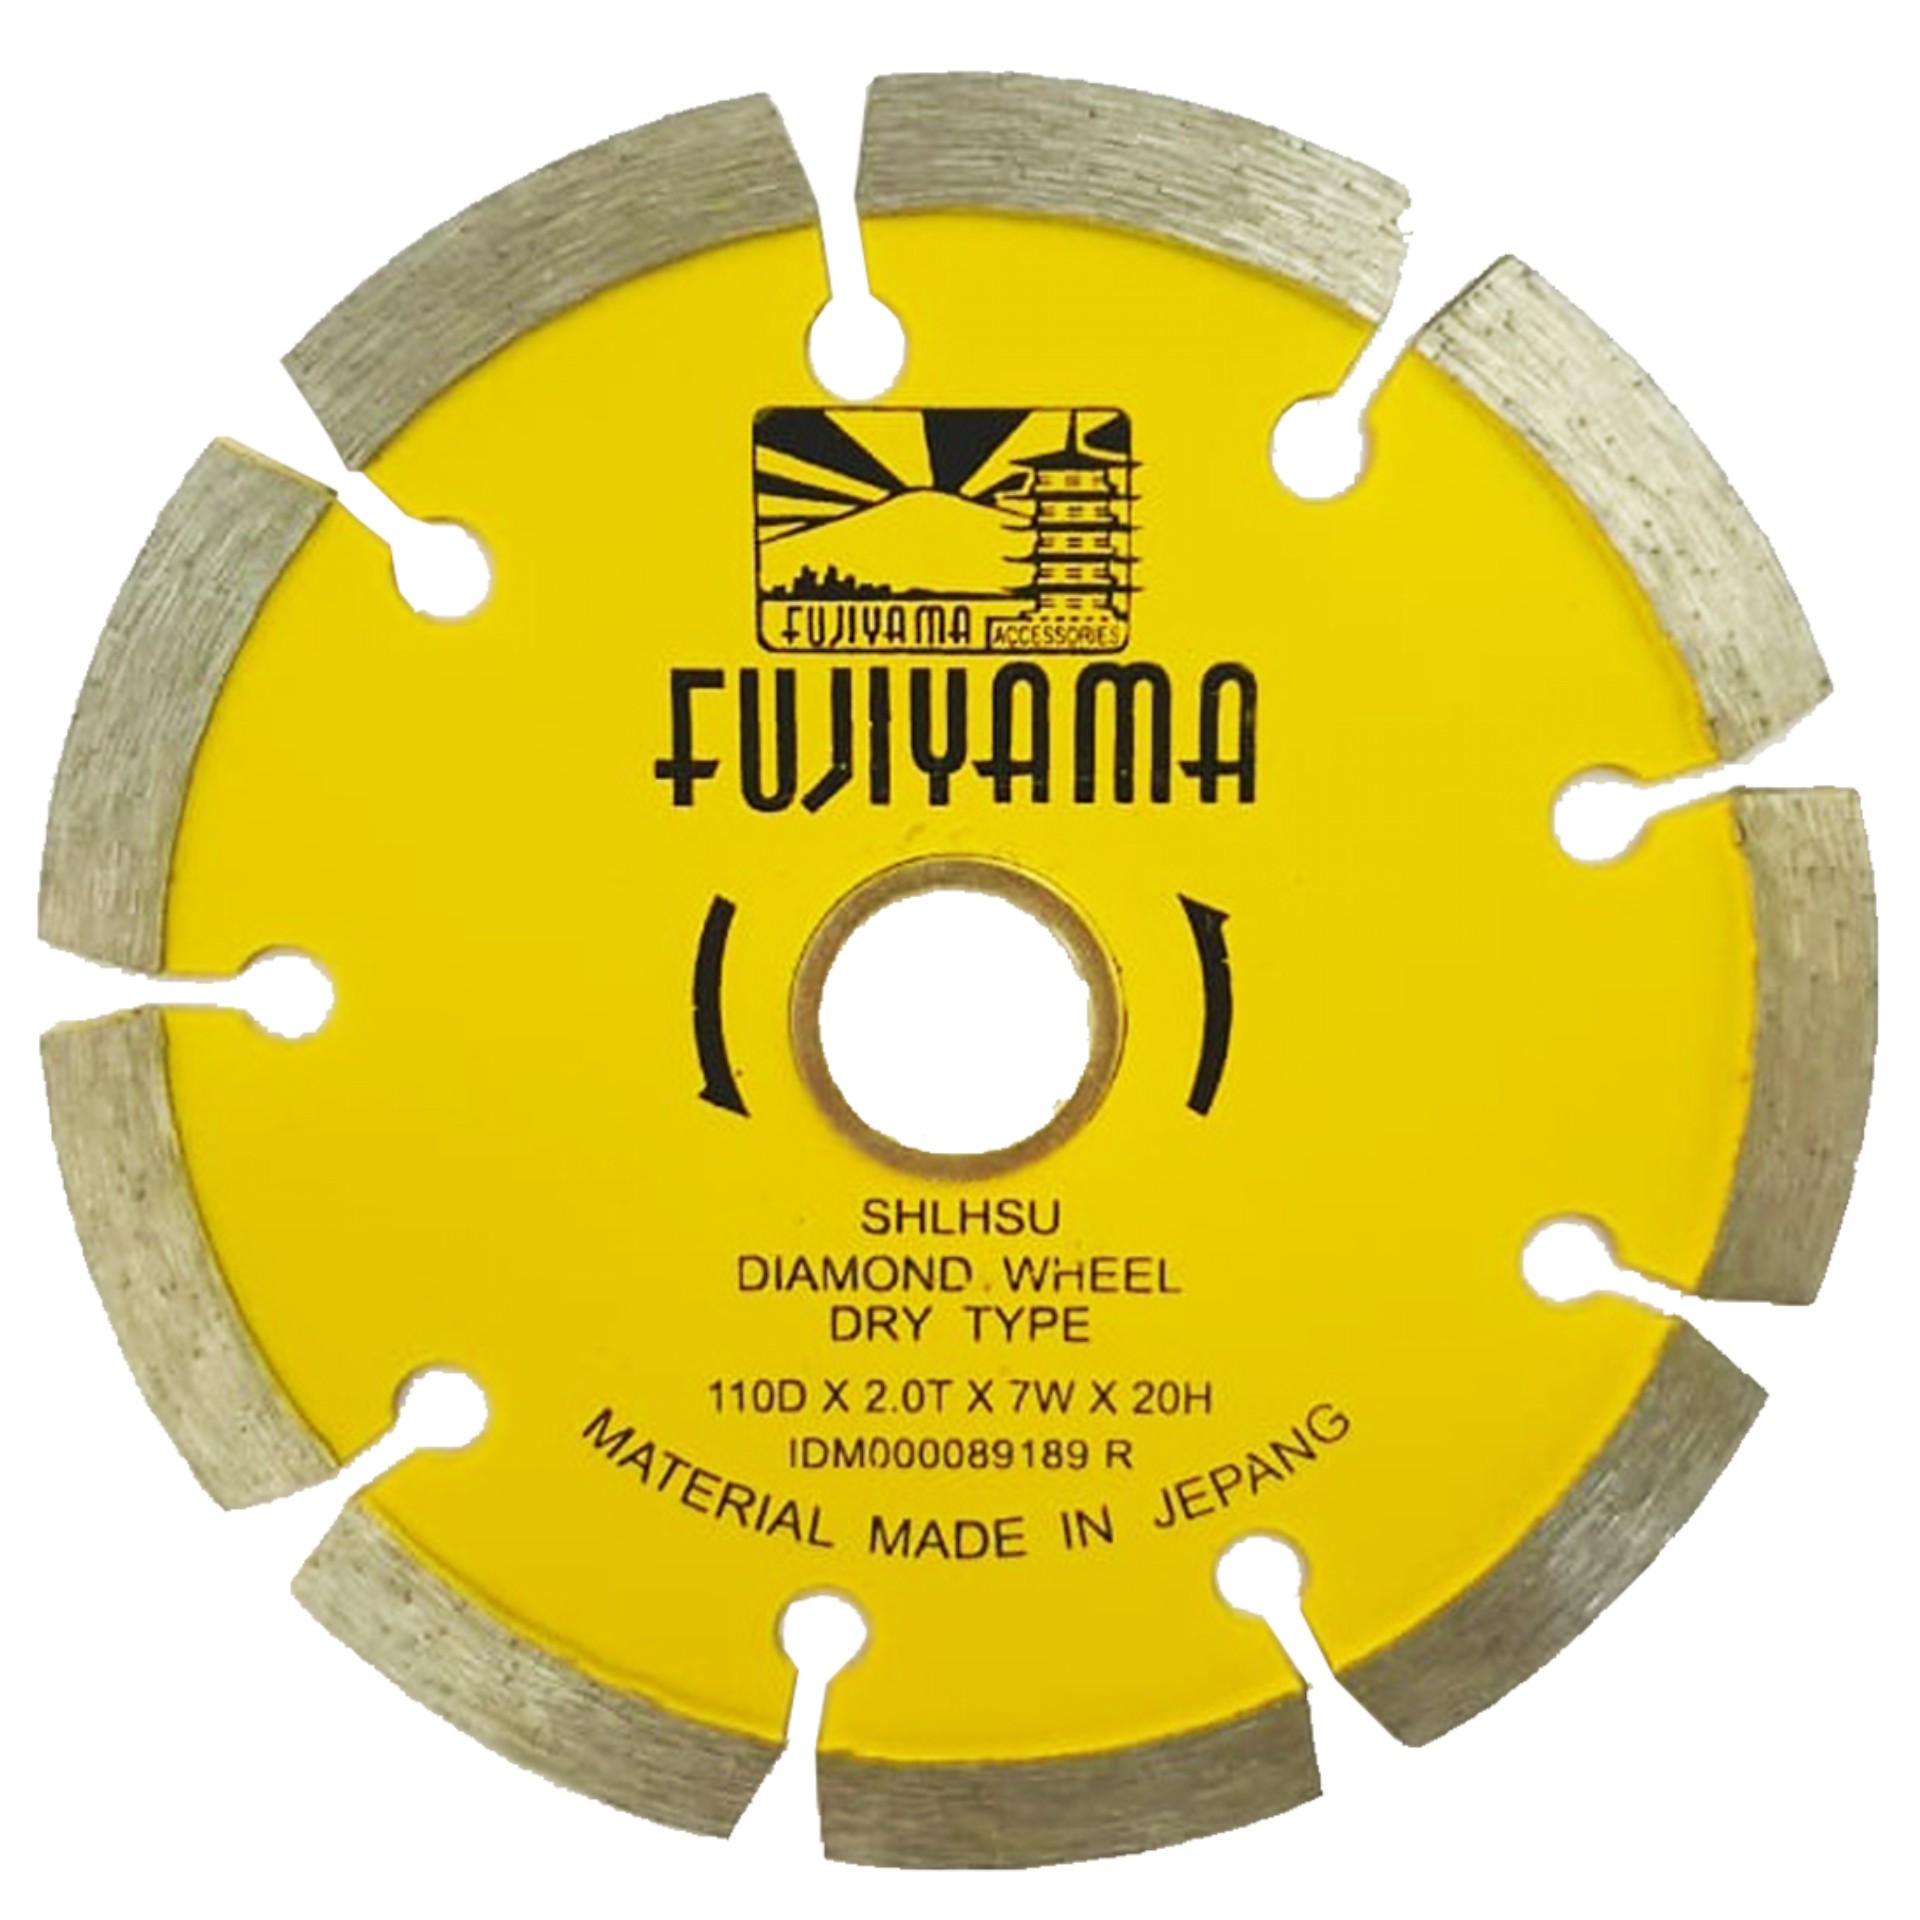 Diamond Wheel Dry Type Fujiyama 2